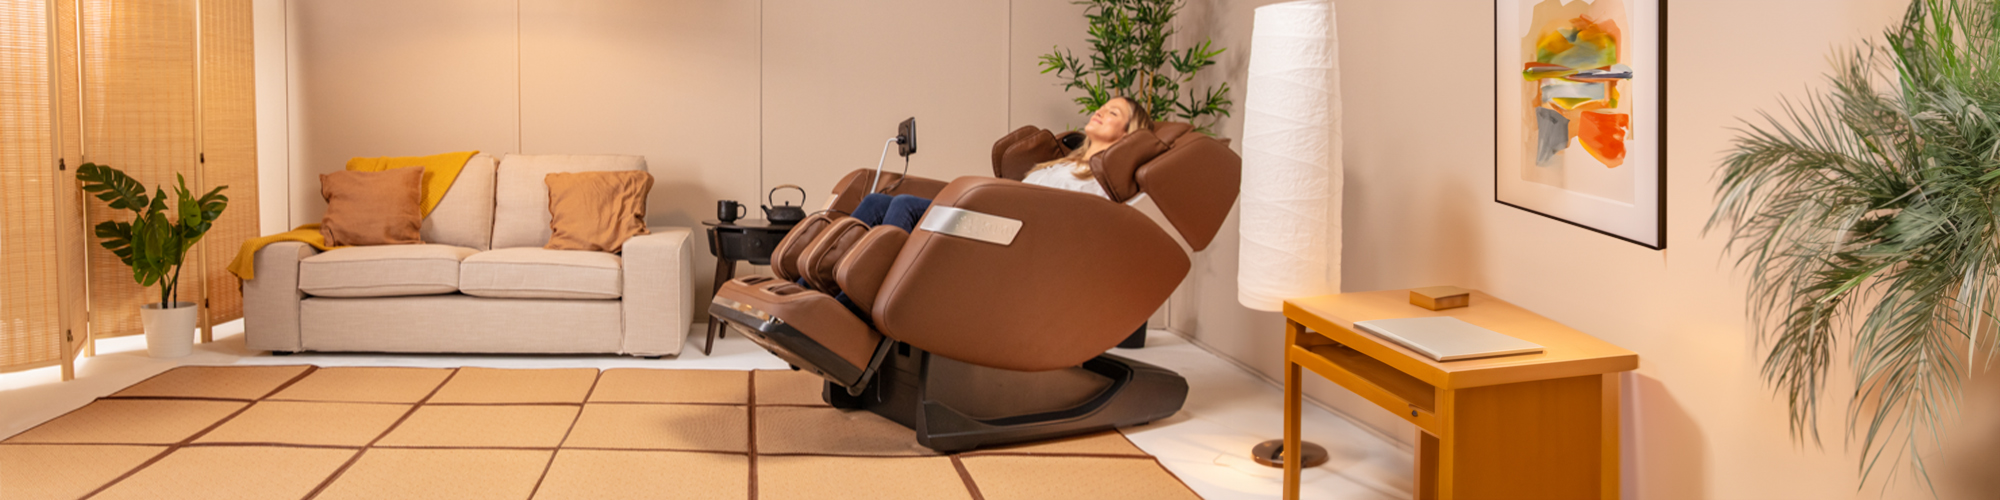 KOYO 303TS Massage Chair